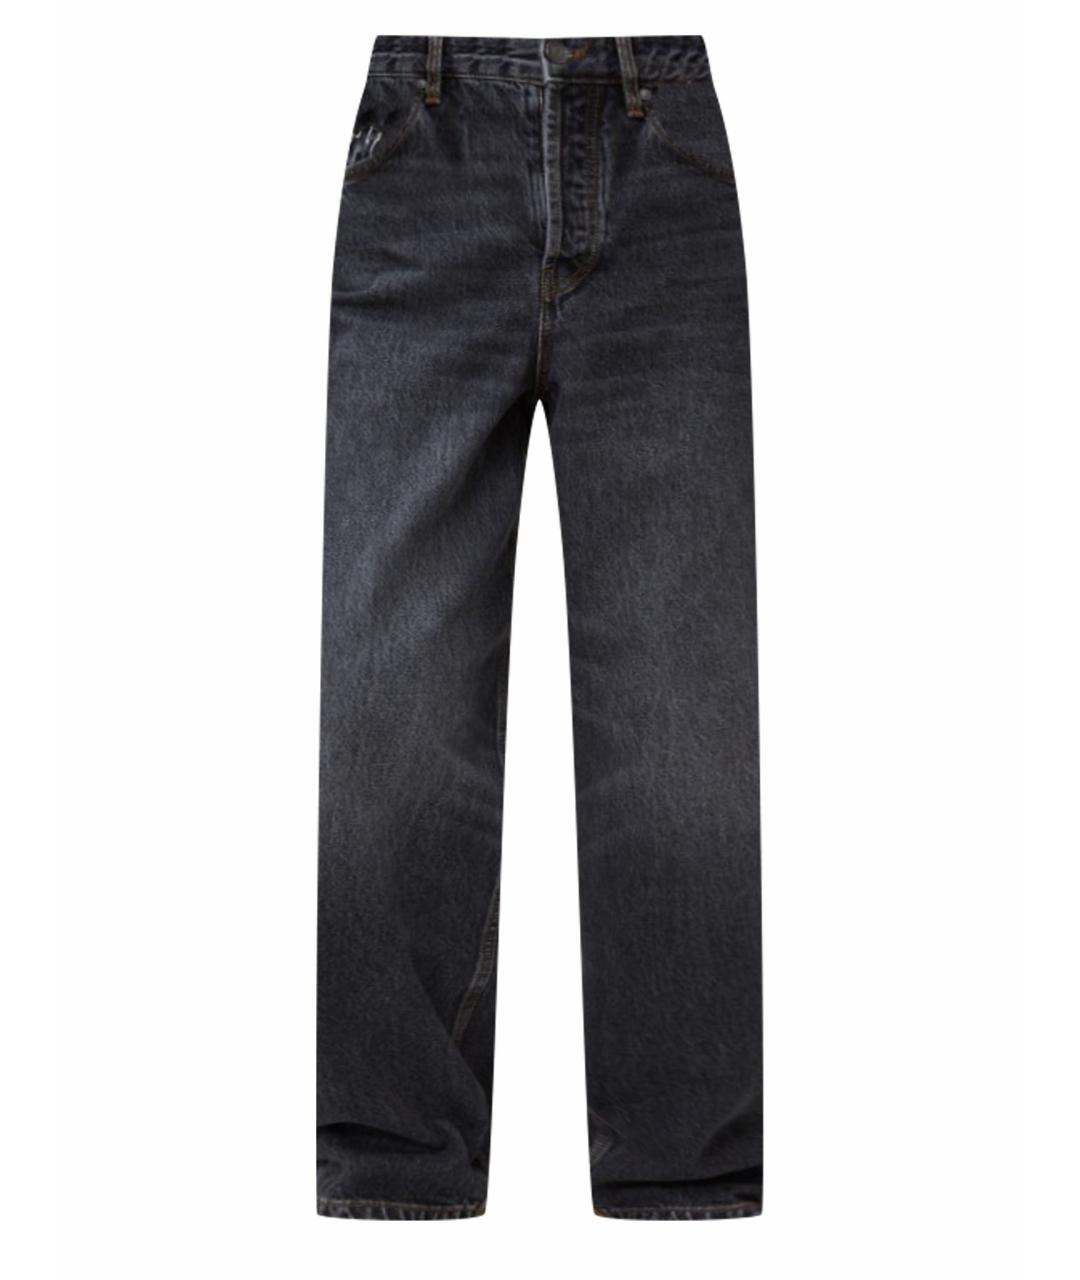 12 STOREEZ Антрацитовые хлопковые прямые джинсы, фото 1